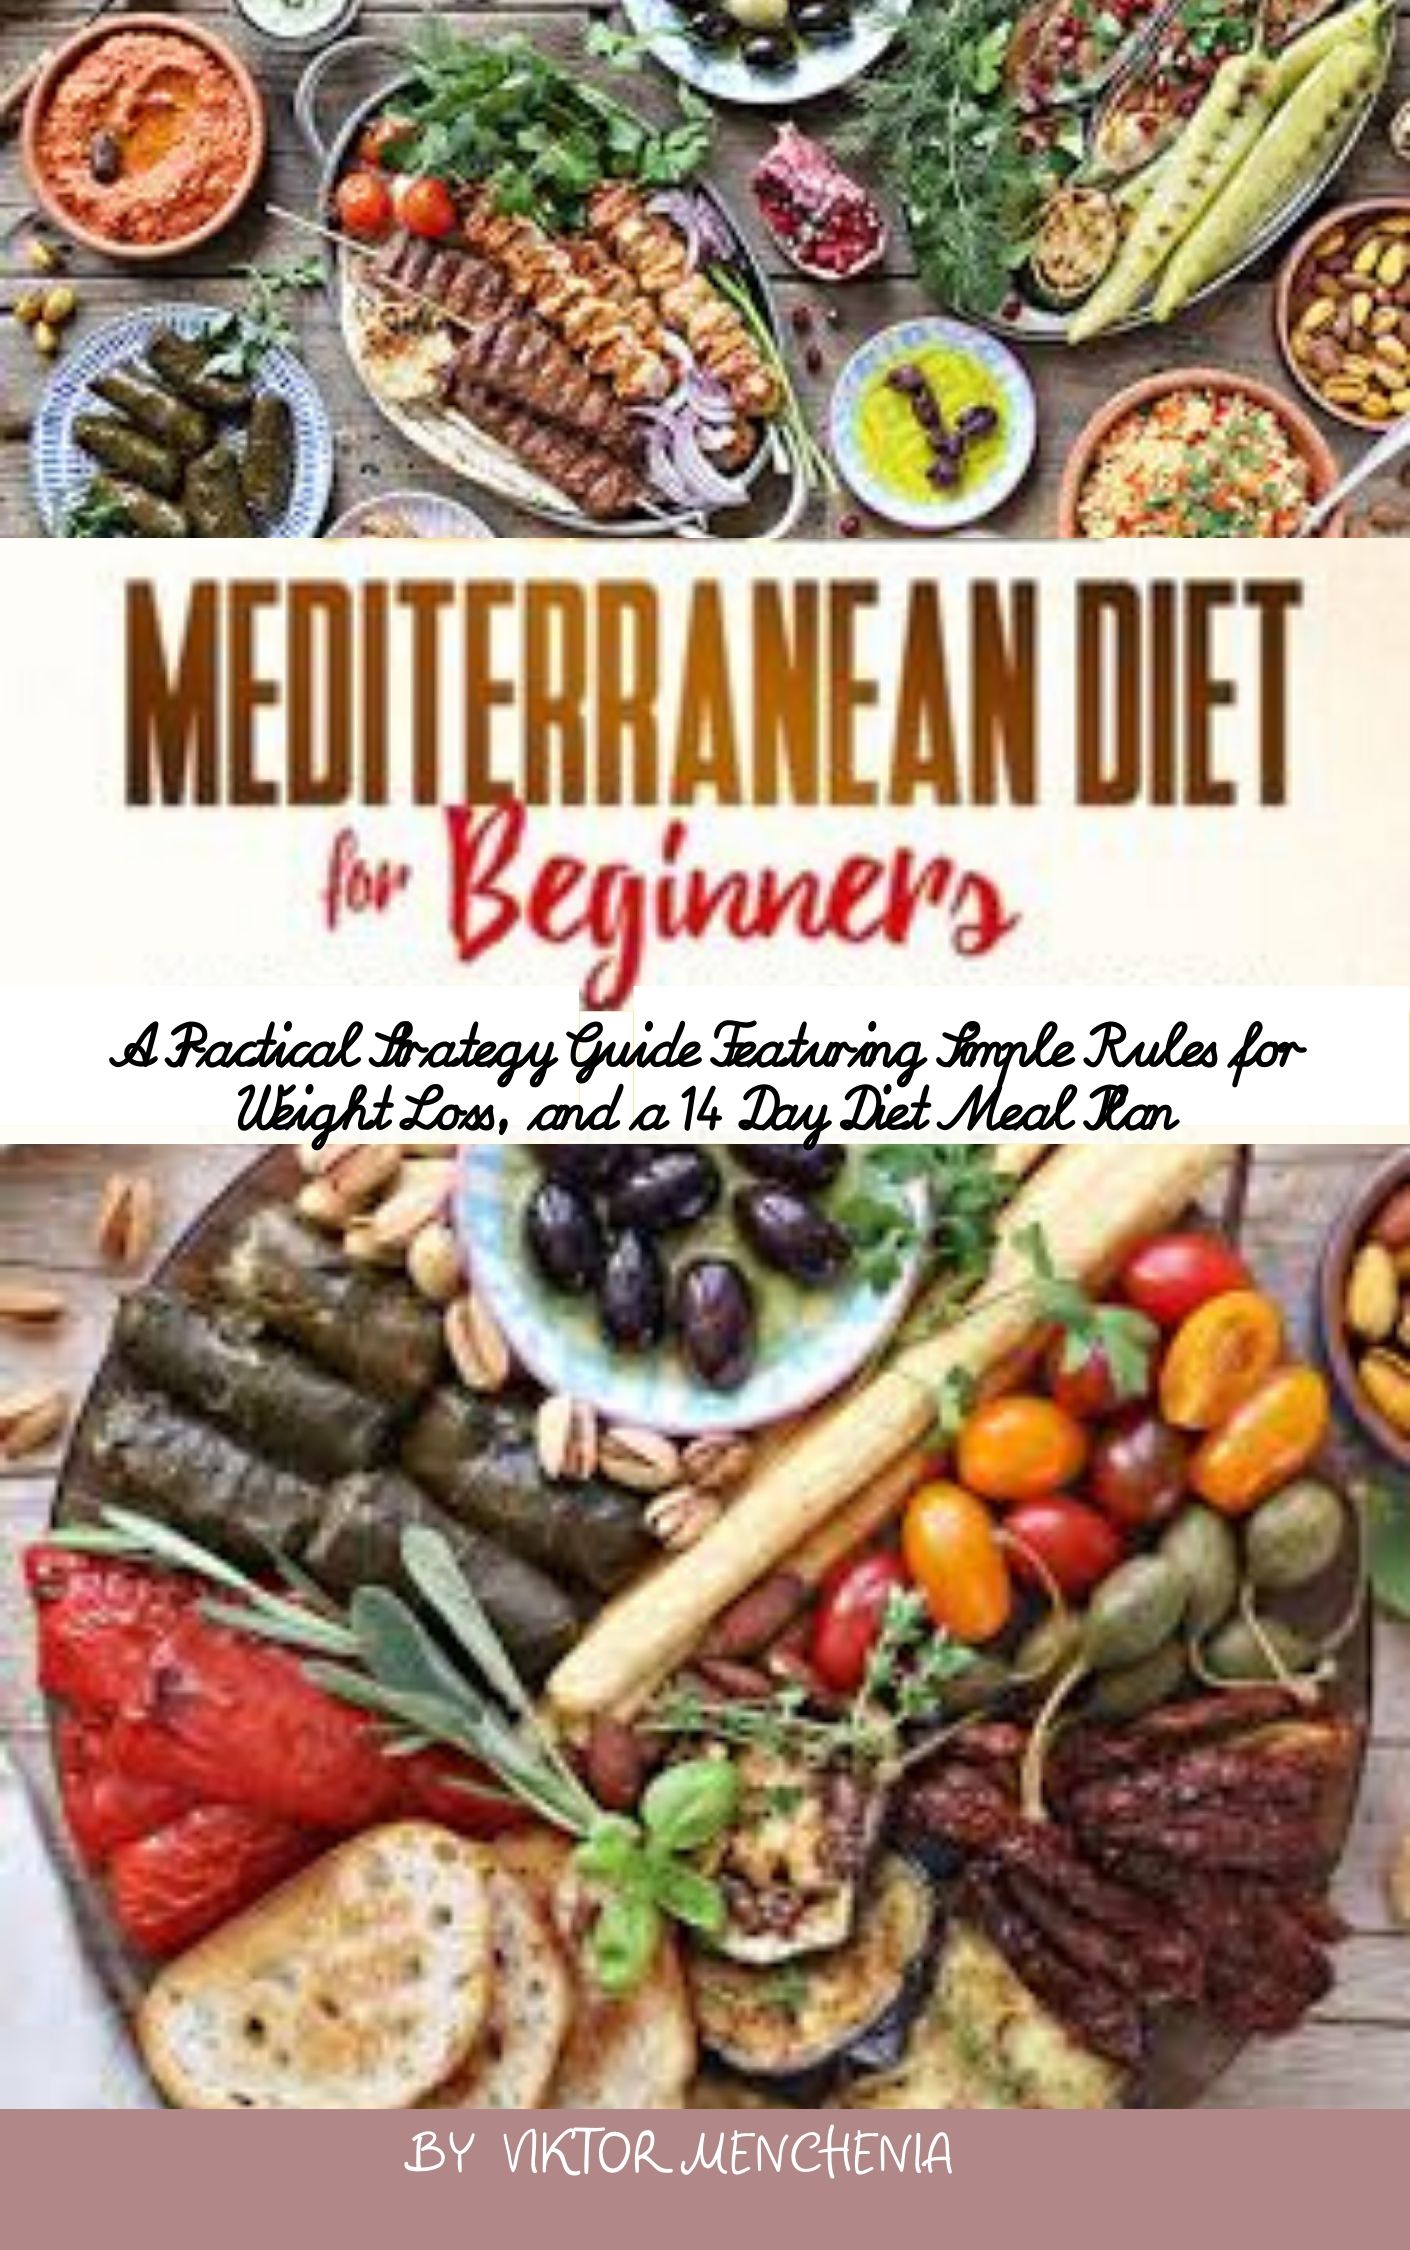 FREE: Mediterranean Diet For Beginners by Viktor Menchenia